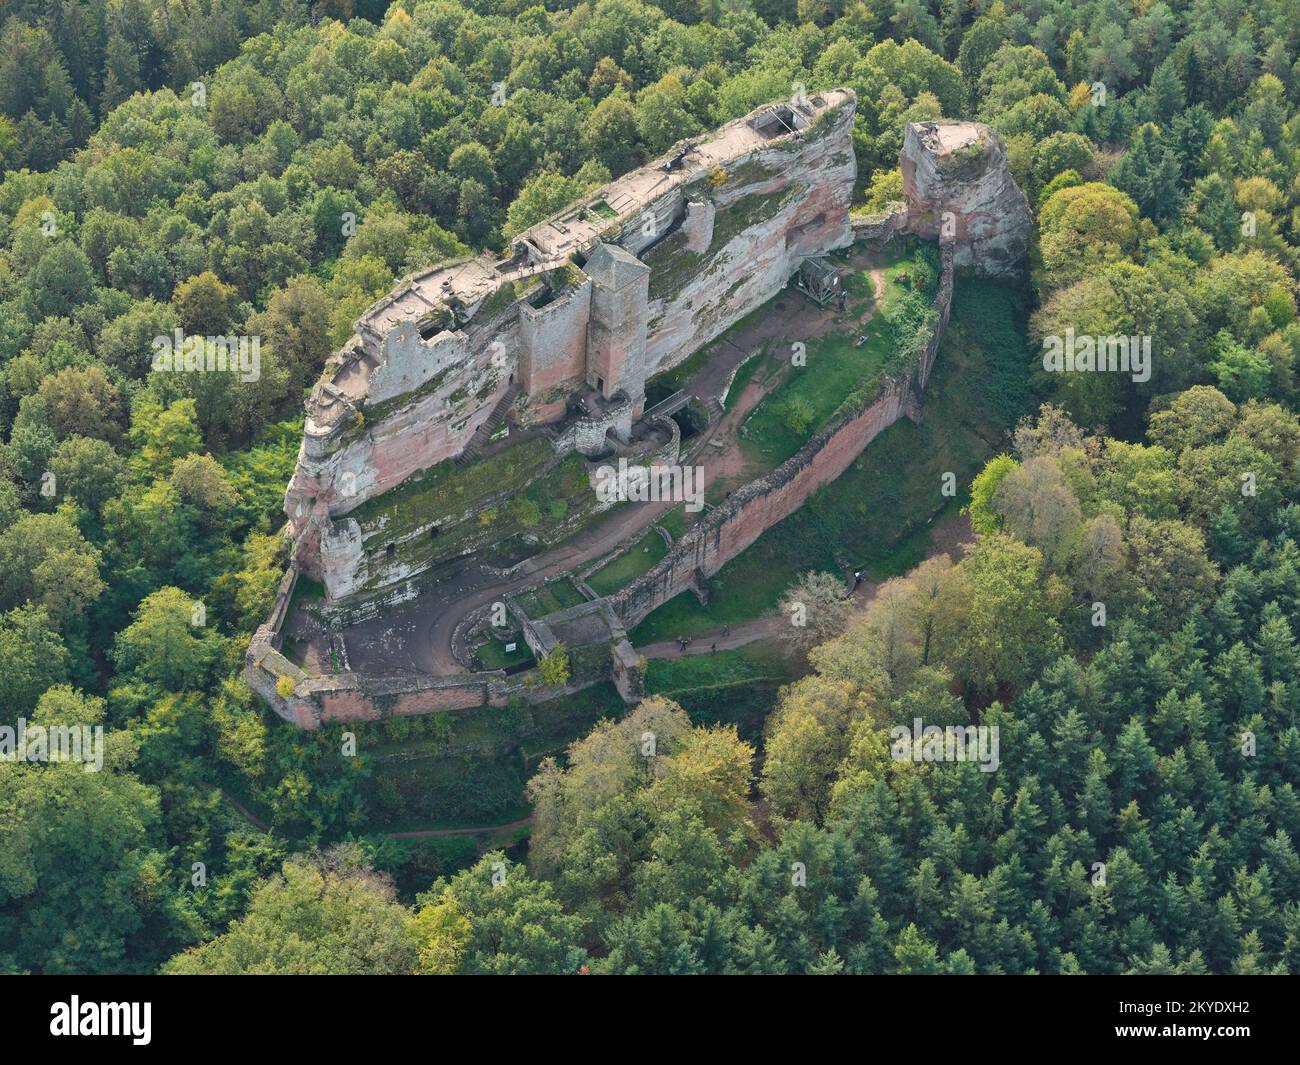 VISTA AÉREA. Ruinas del castillo de Fleckenstein en la cima de una colina de arenisca muy estrecha y elevada. Lembach, Bajo Rin, Alsacia, Gran Este, Francia. Foto de stock